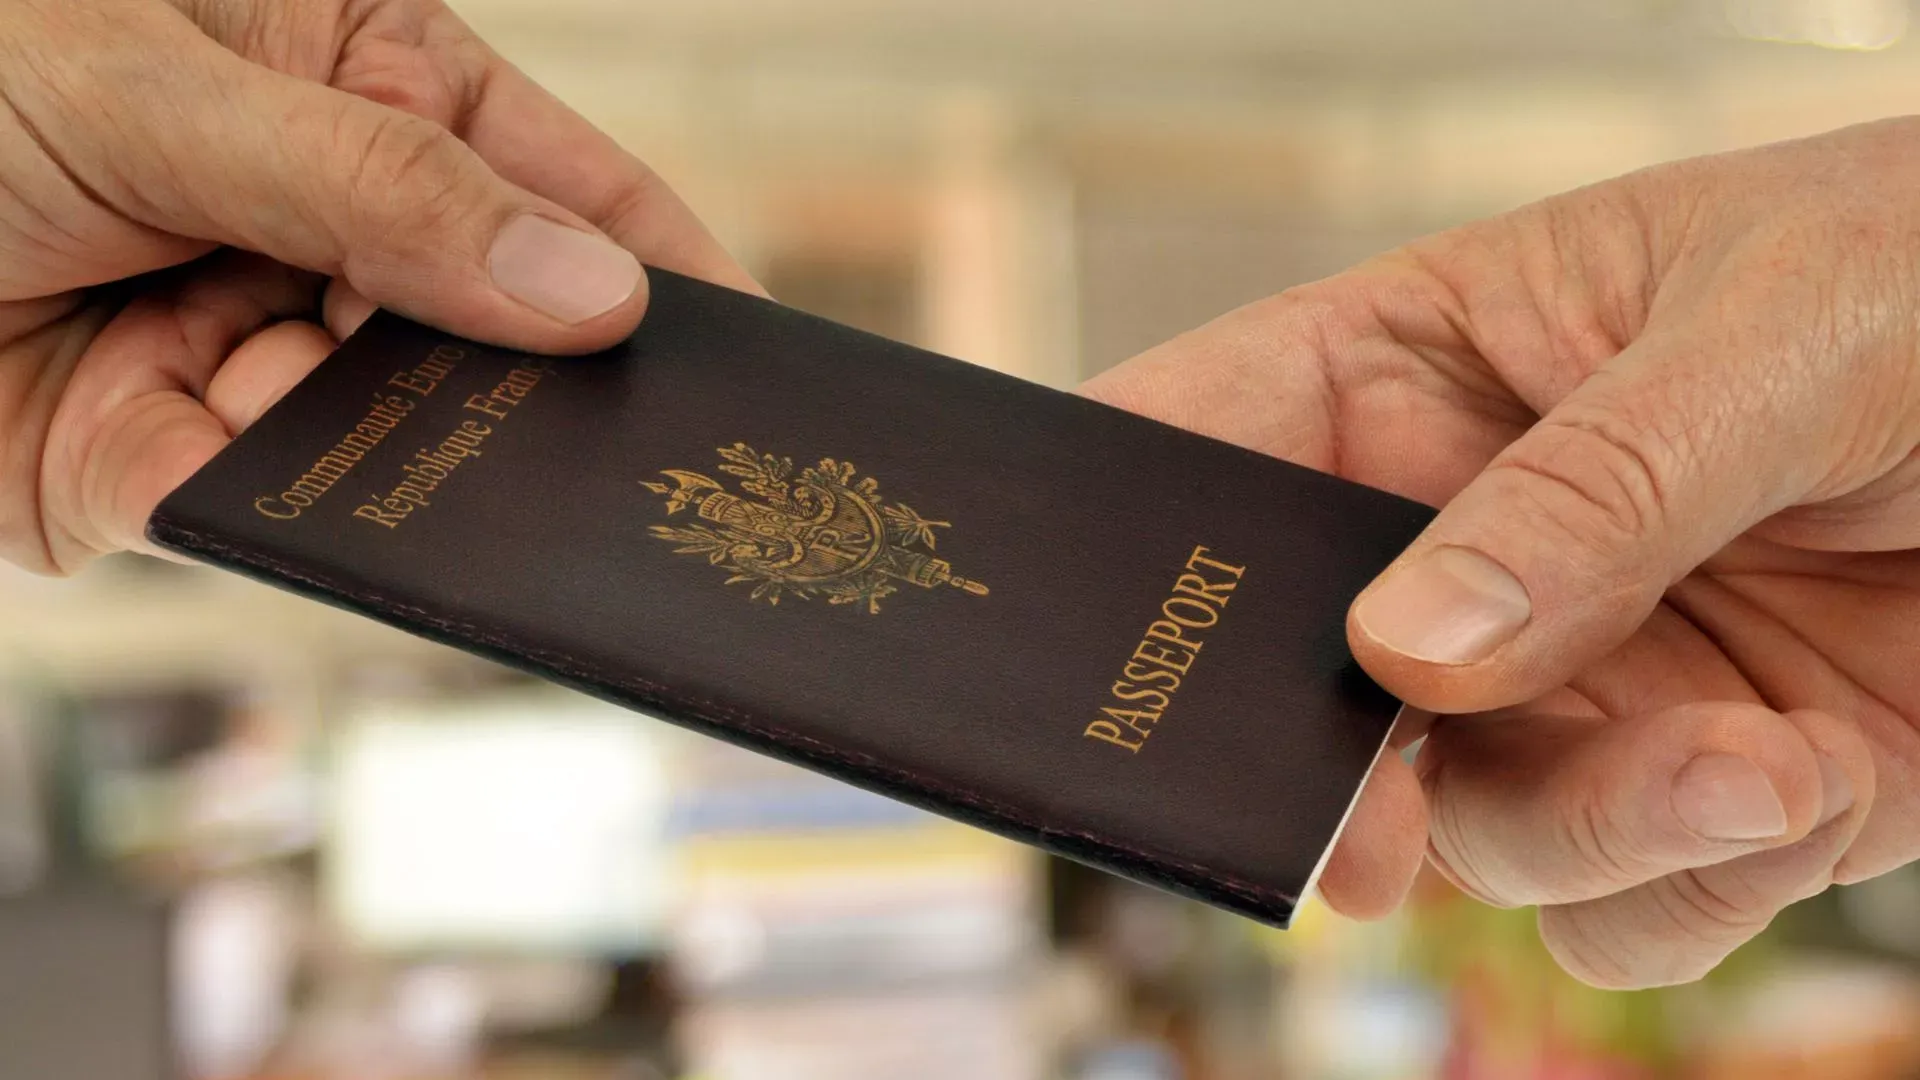 
											
											Dunyodagi eng kuchli pasport: Yevropa Ittifoqining 4 ta davlati reytingda yetakchilik qilmoqda
											
											